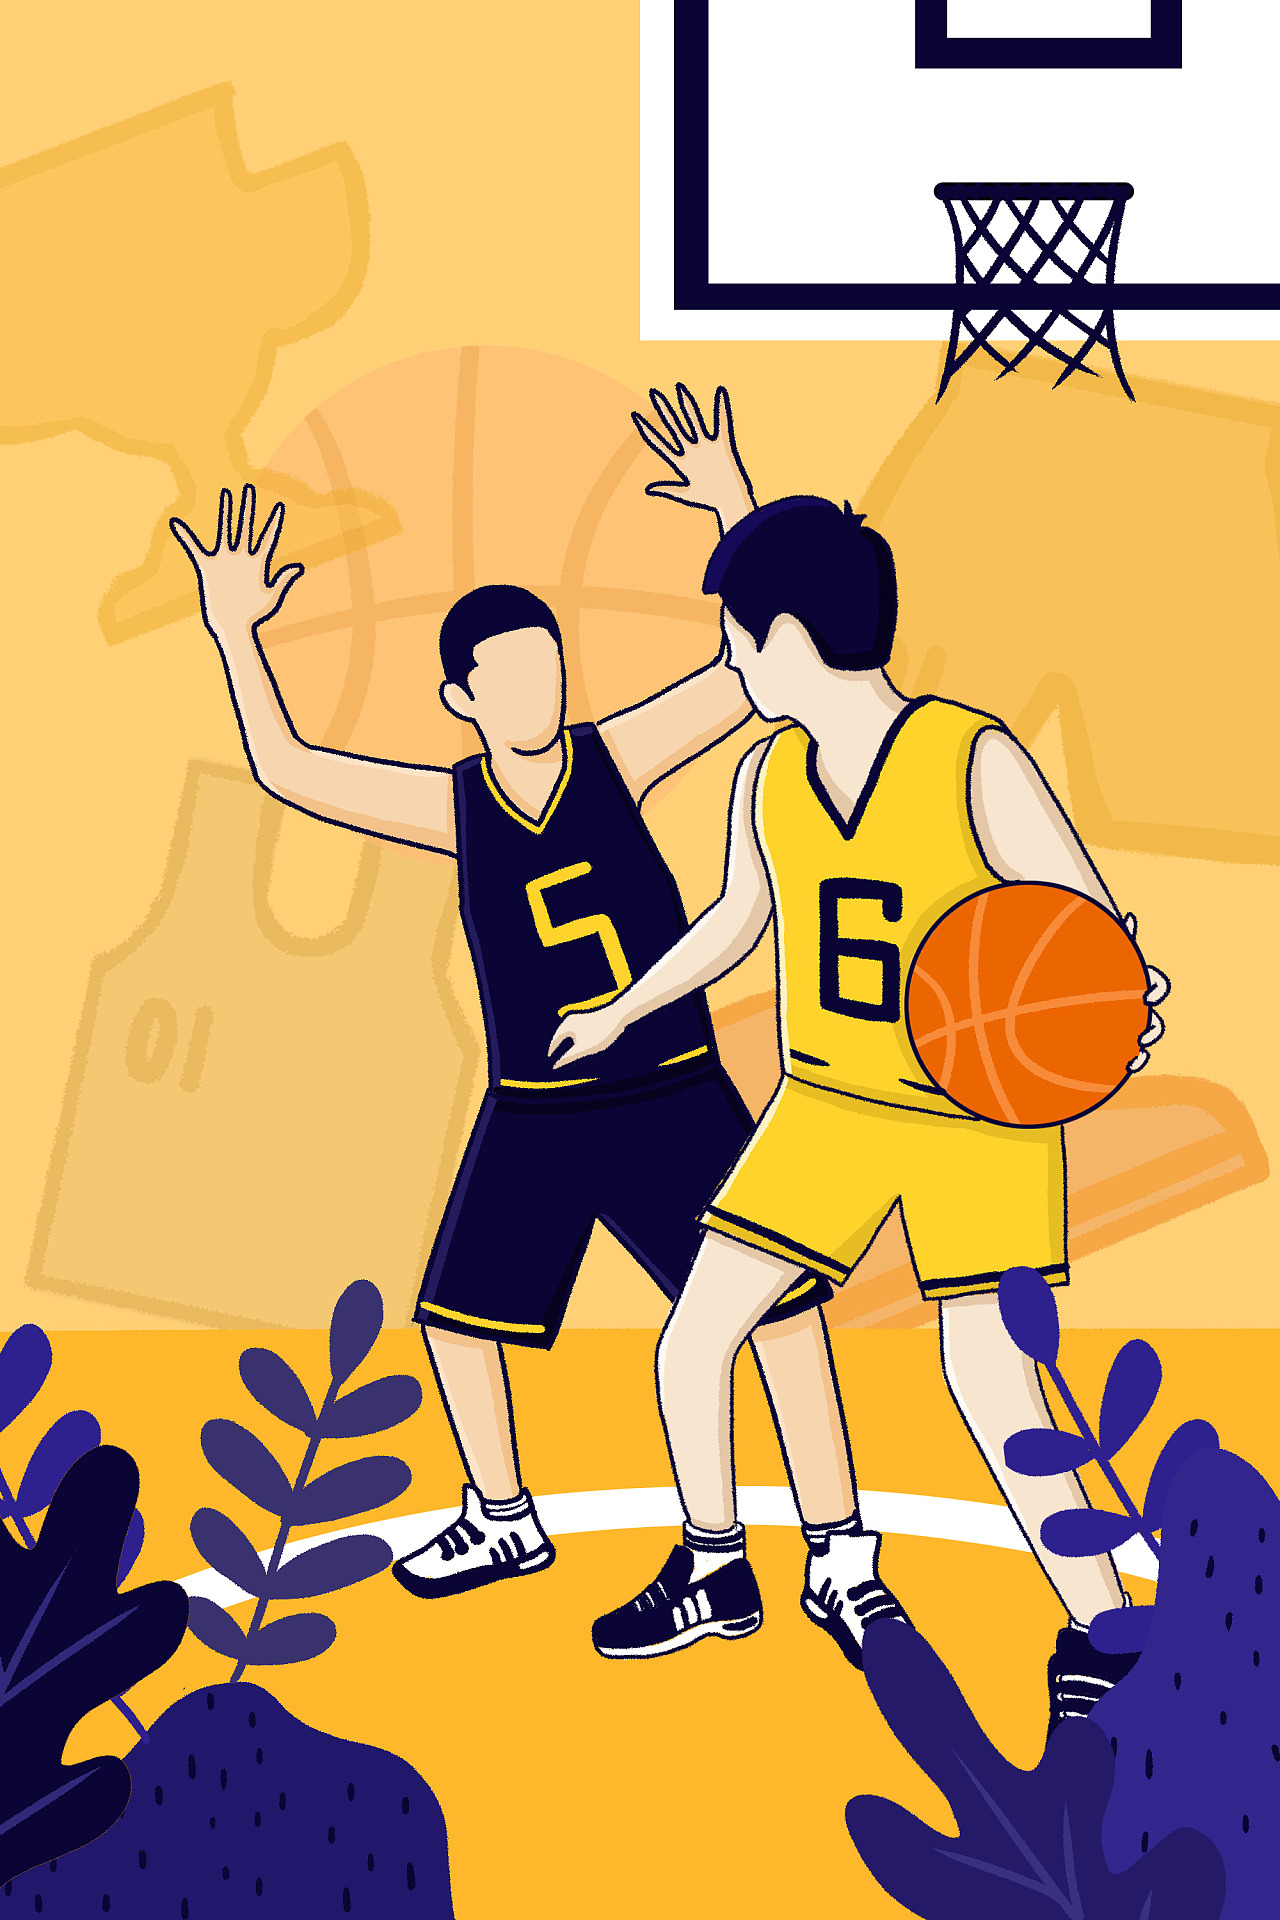 矢量手绘打篮球的孩子图片素材免费下载 - 觅知网